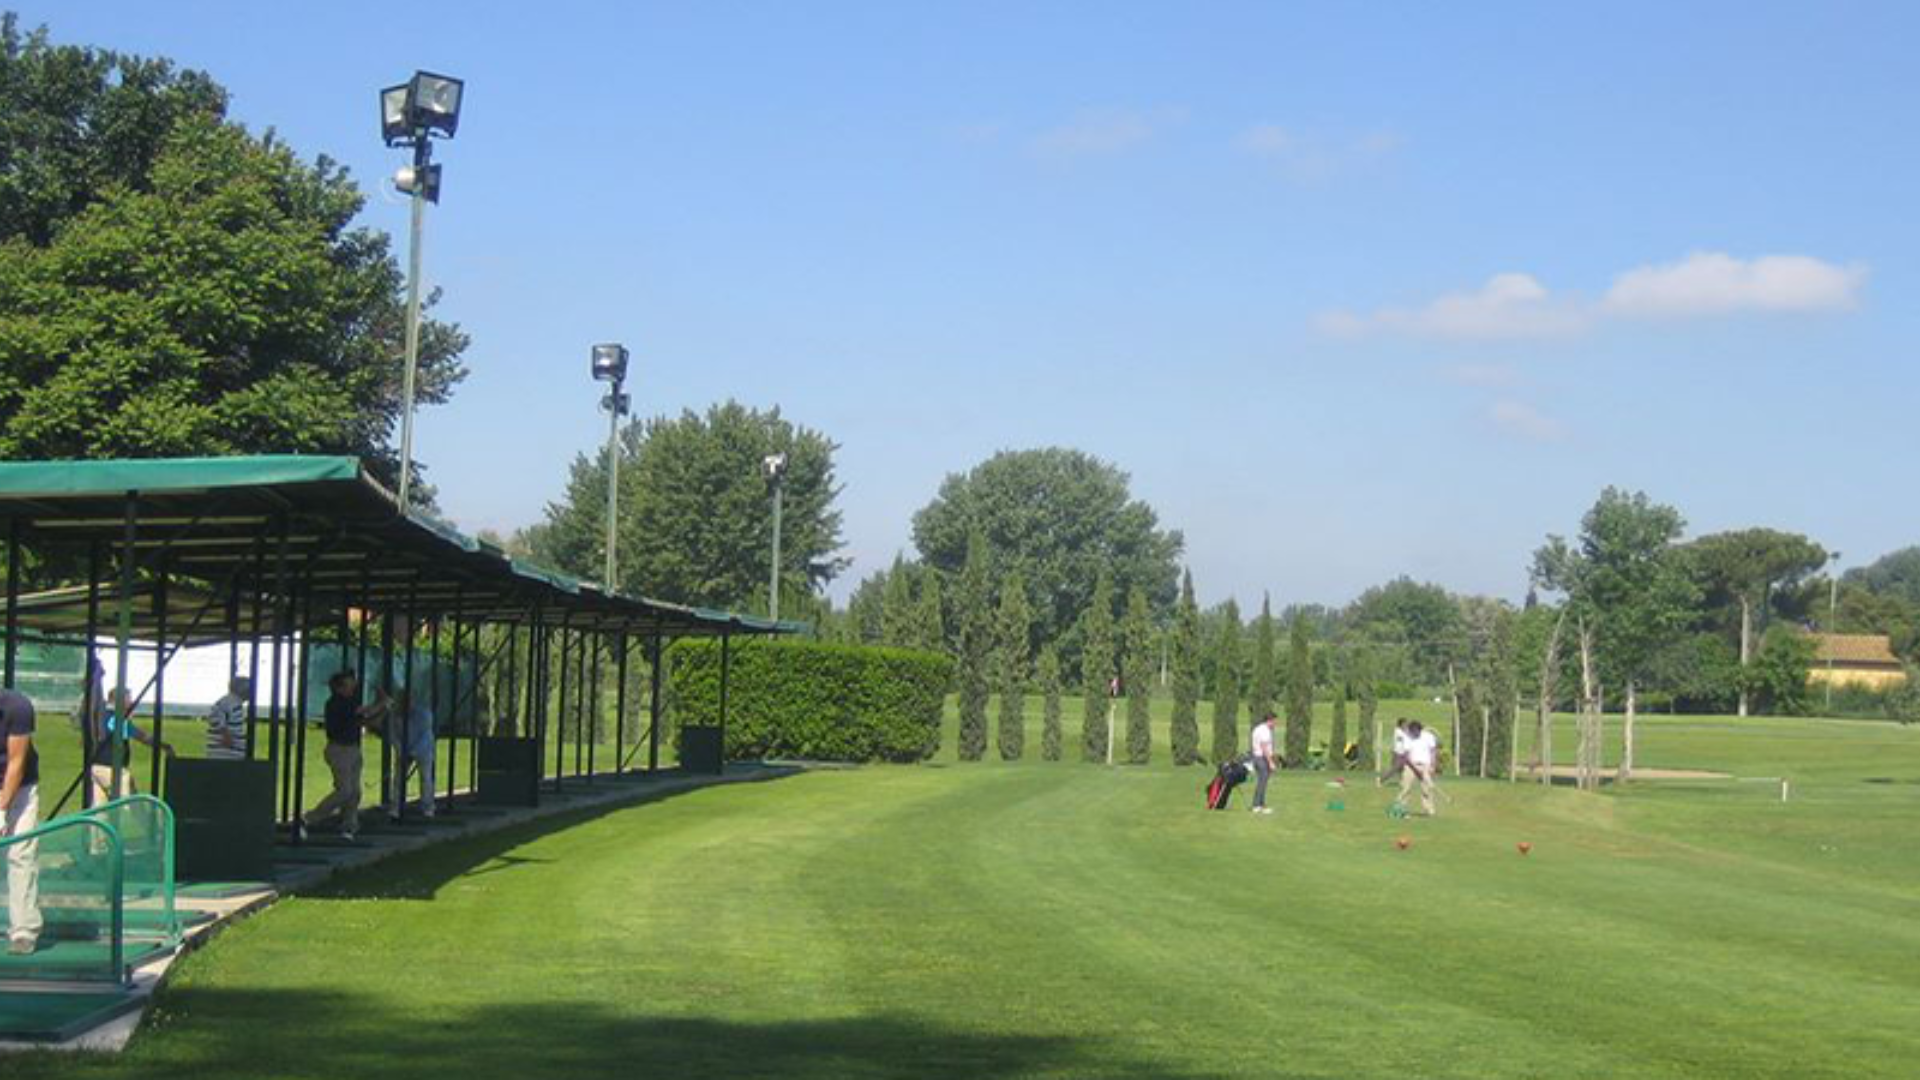 Club de Golf Parque de Florencia